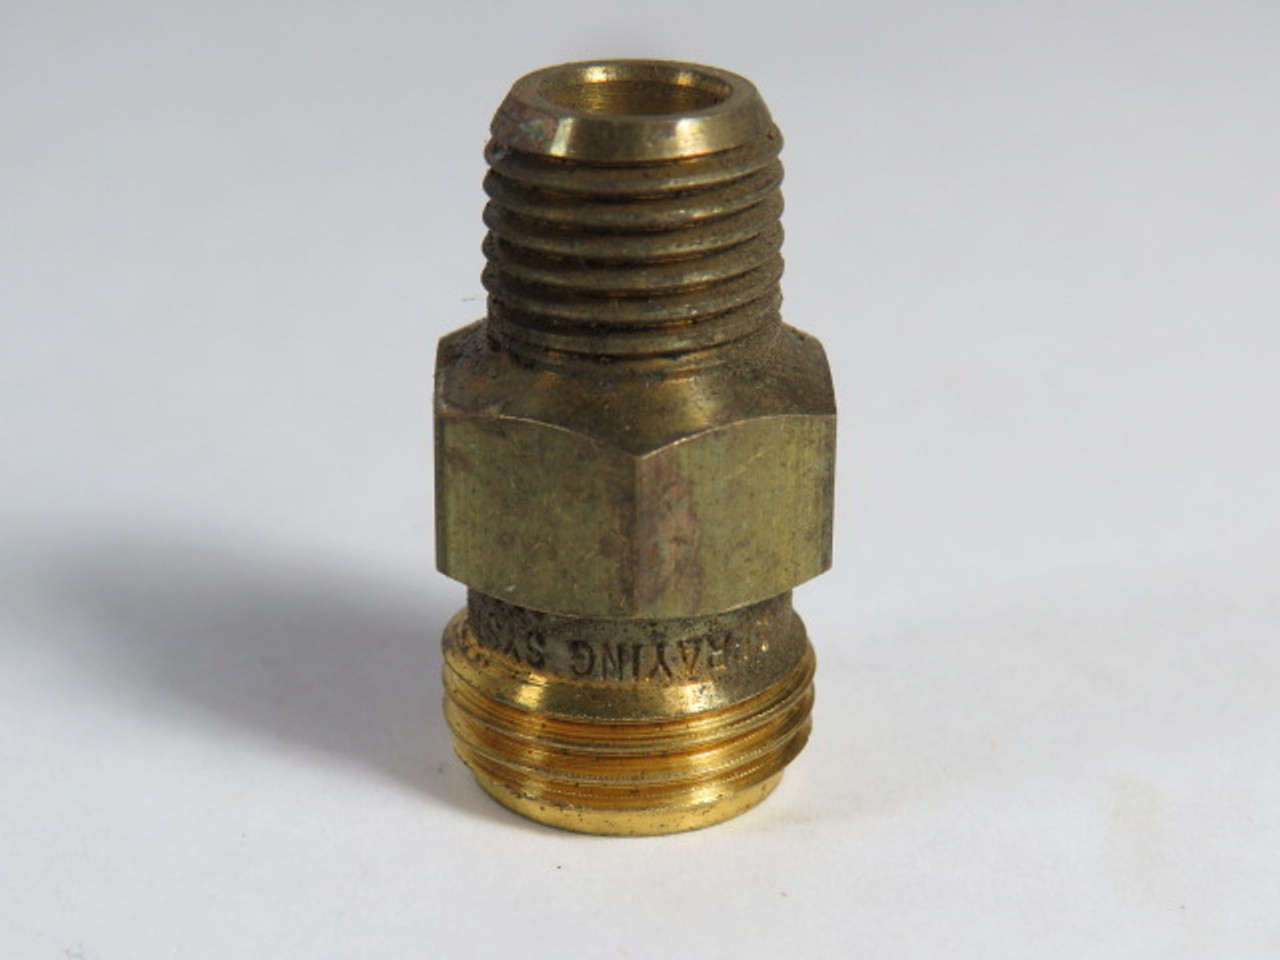 Teejet 1322 Brass Body (1/4 TT) USED